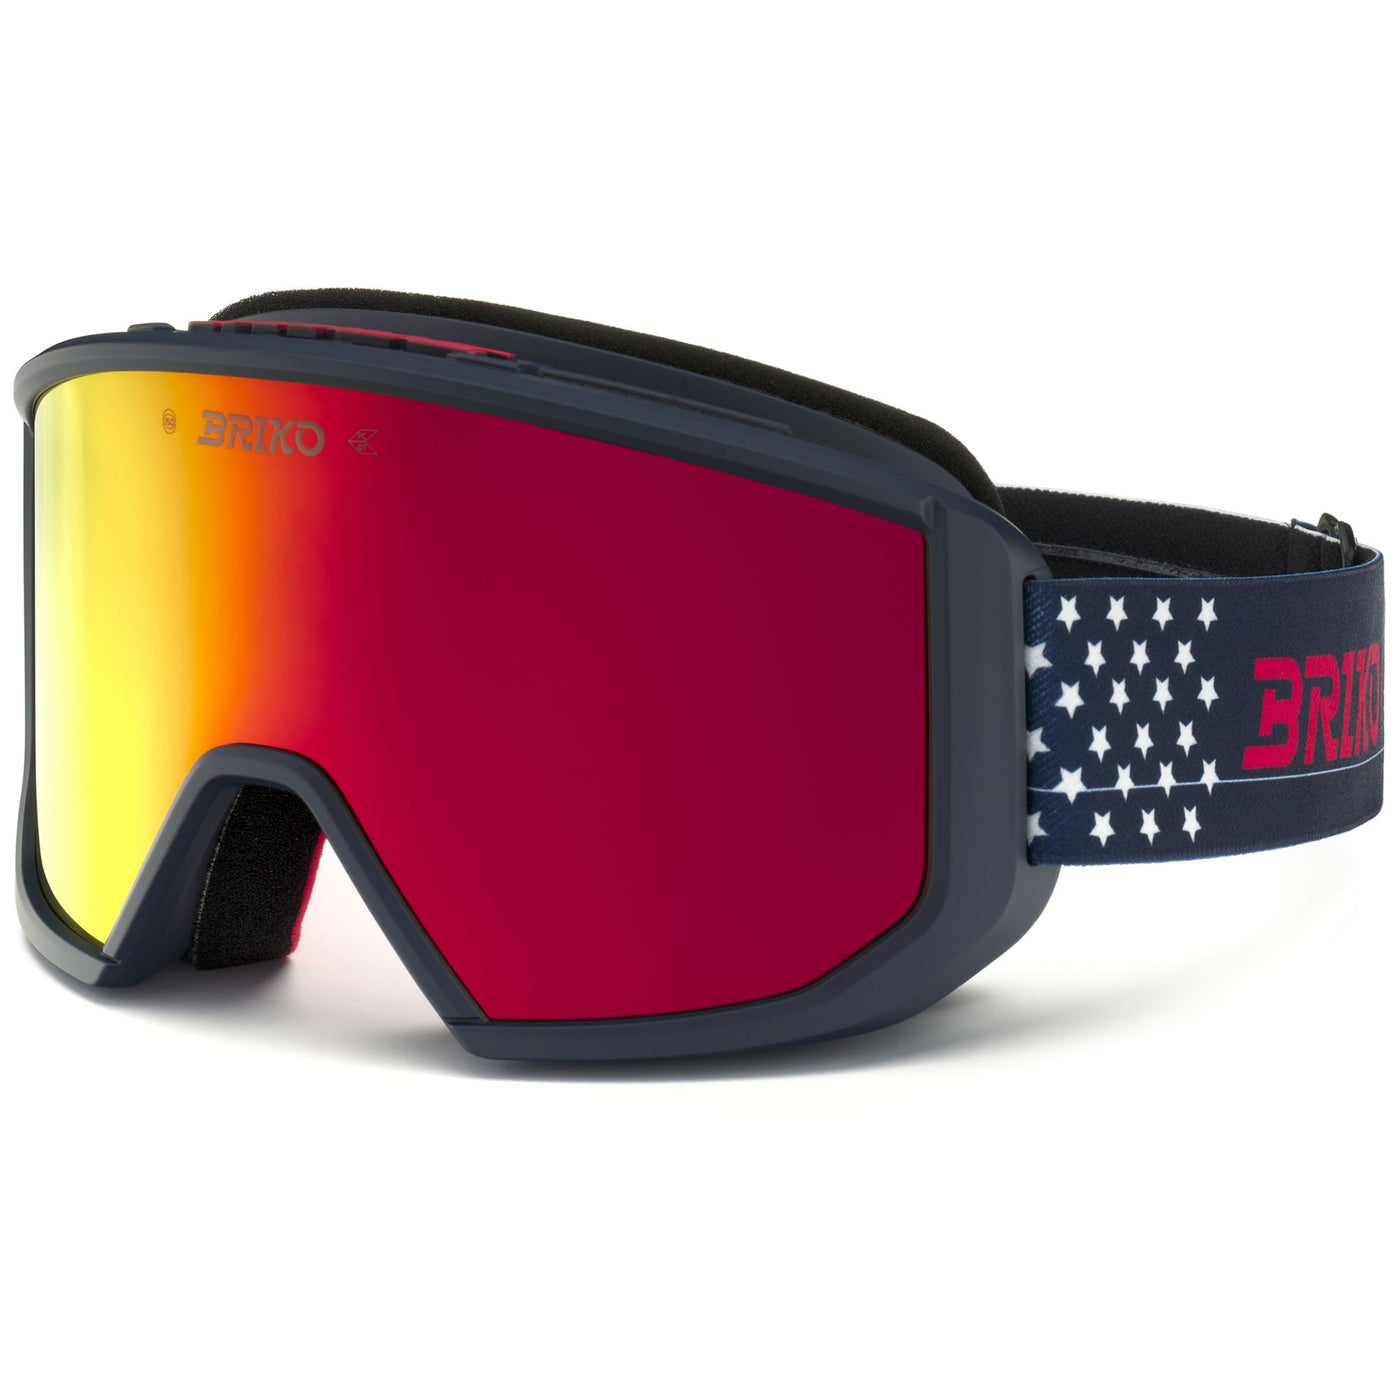 Goggles Unisex VULCANO MASK USA Ski  Goggles TANGAROA BLUE RED - RM3 Dressed Side (jpg Rgb)		